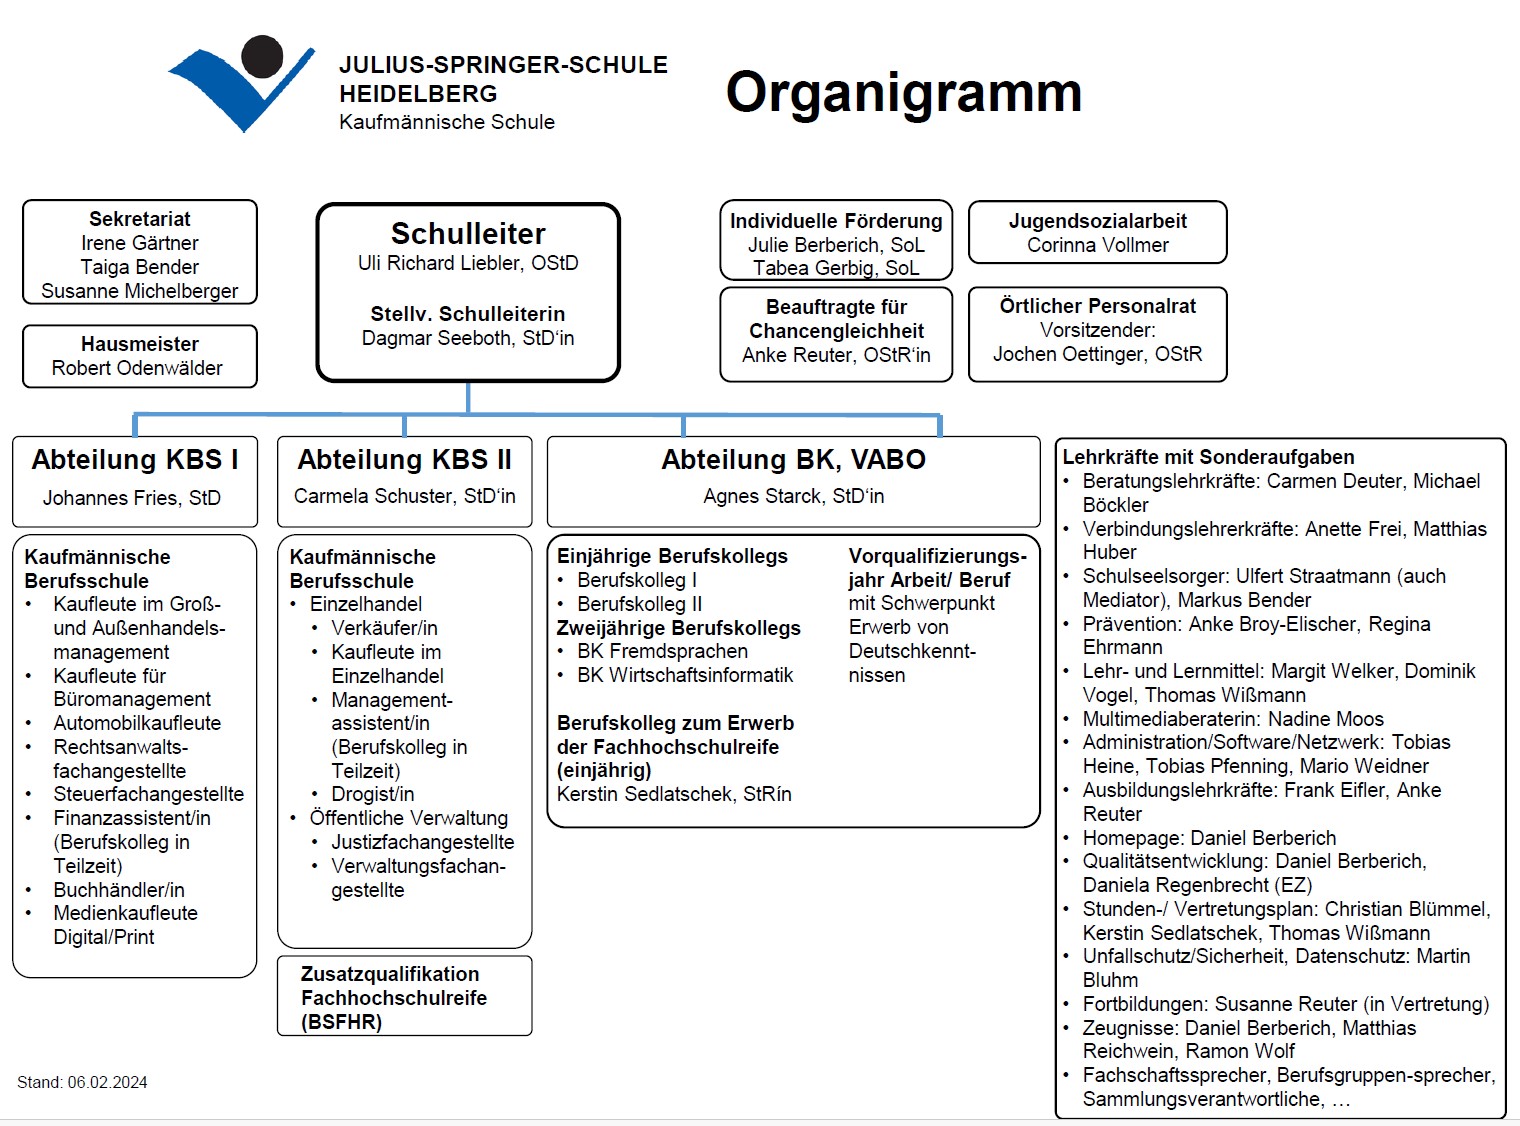 Organigramm der Julius-Springer-Schule